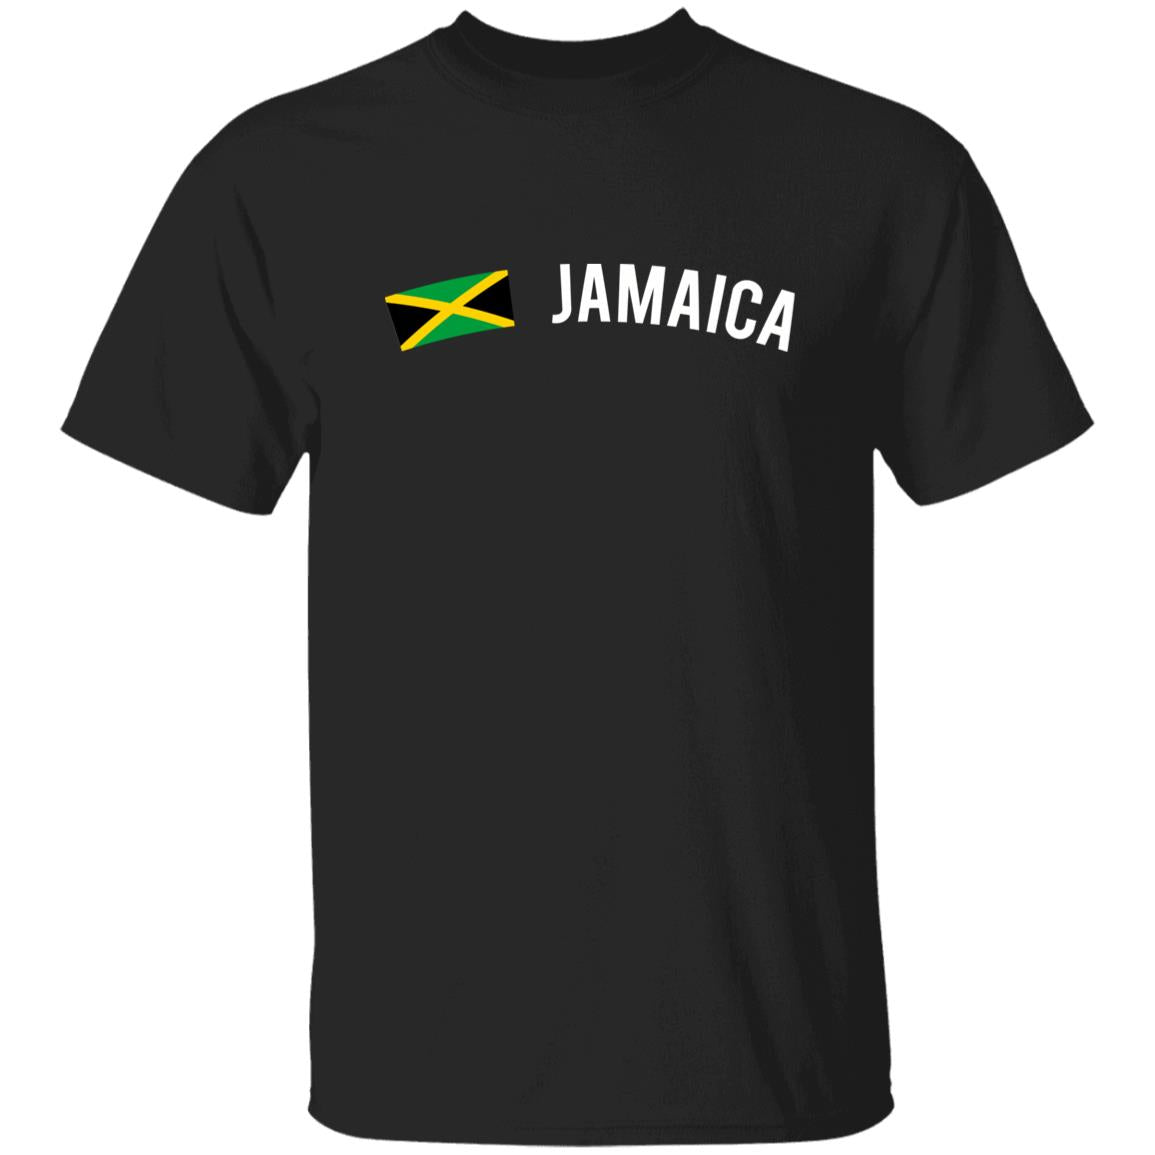 Jamaica Unisex T-shirt gift Jamaica flag tee Kingston White Black Dark Heather-Family-Gift-Planet